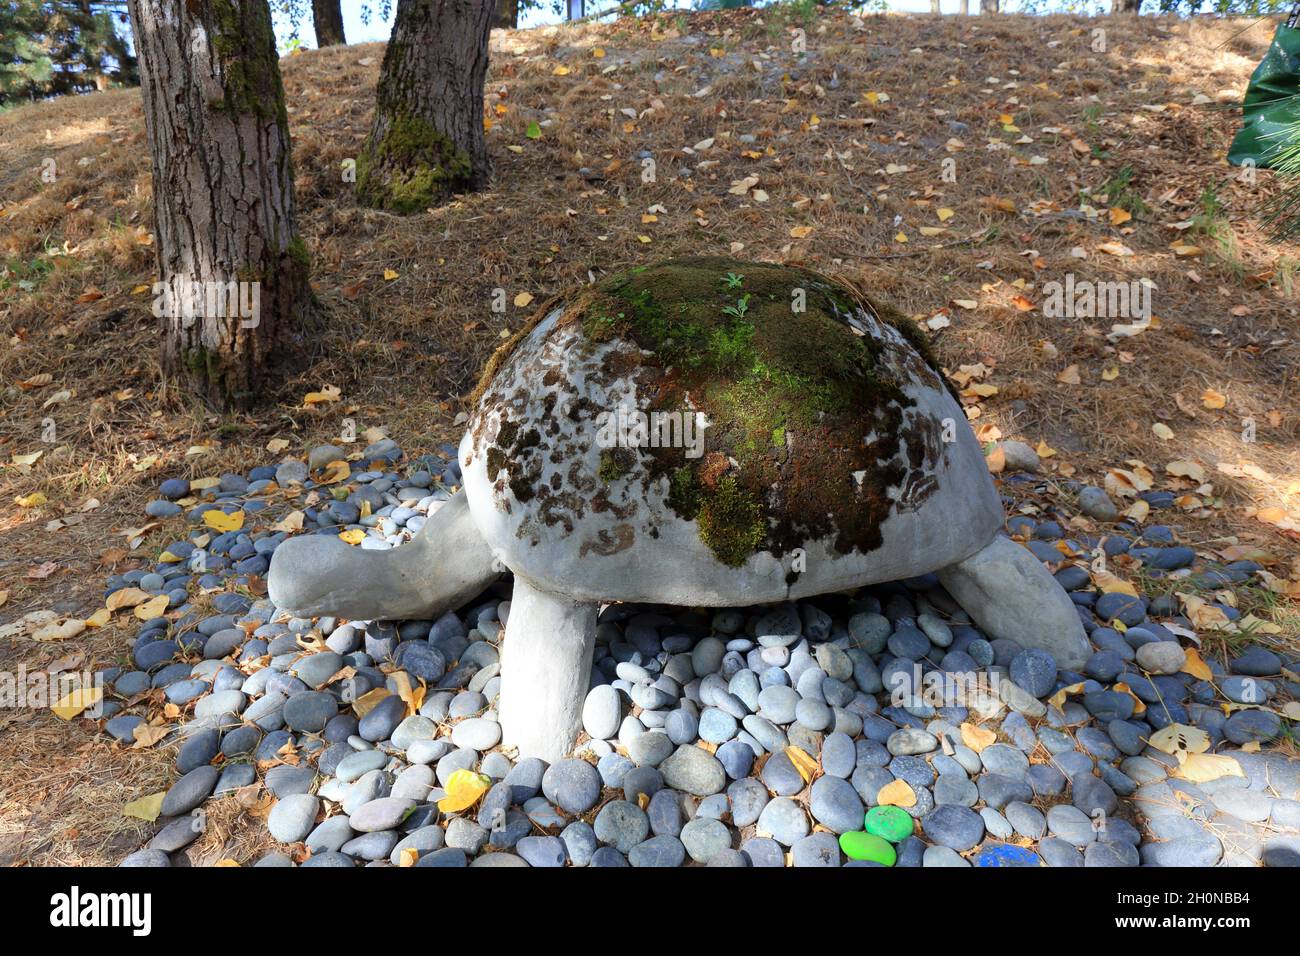 The Moss Turtle bei Troll's Knoll, hinter dem Fremont Troll, Seattle, Washington. Eine Skulptur der öffentlichen Kunst, die Shintoismus und Umwelt verbindet. Stockfoto